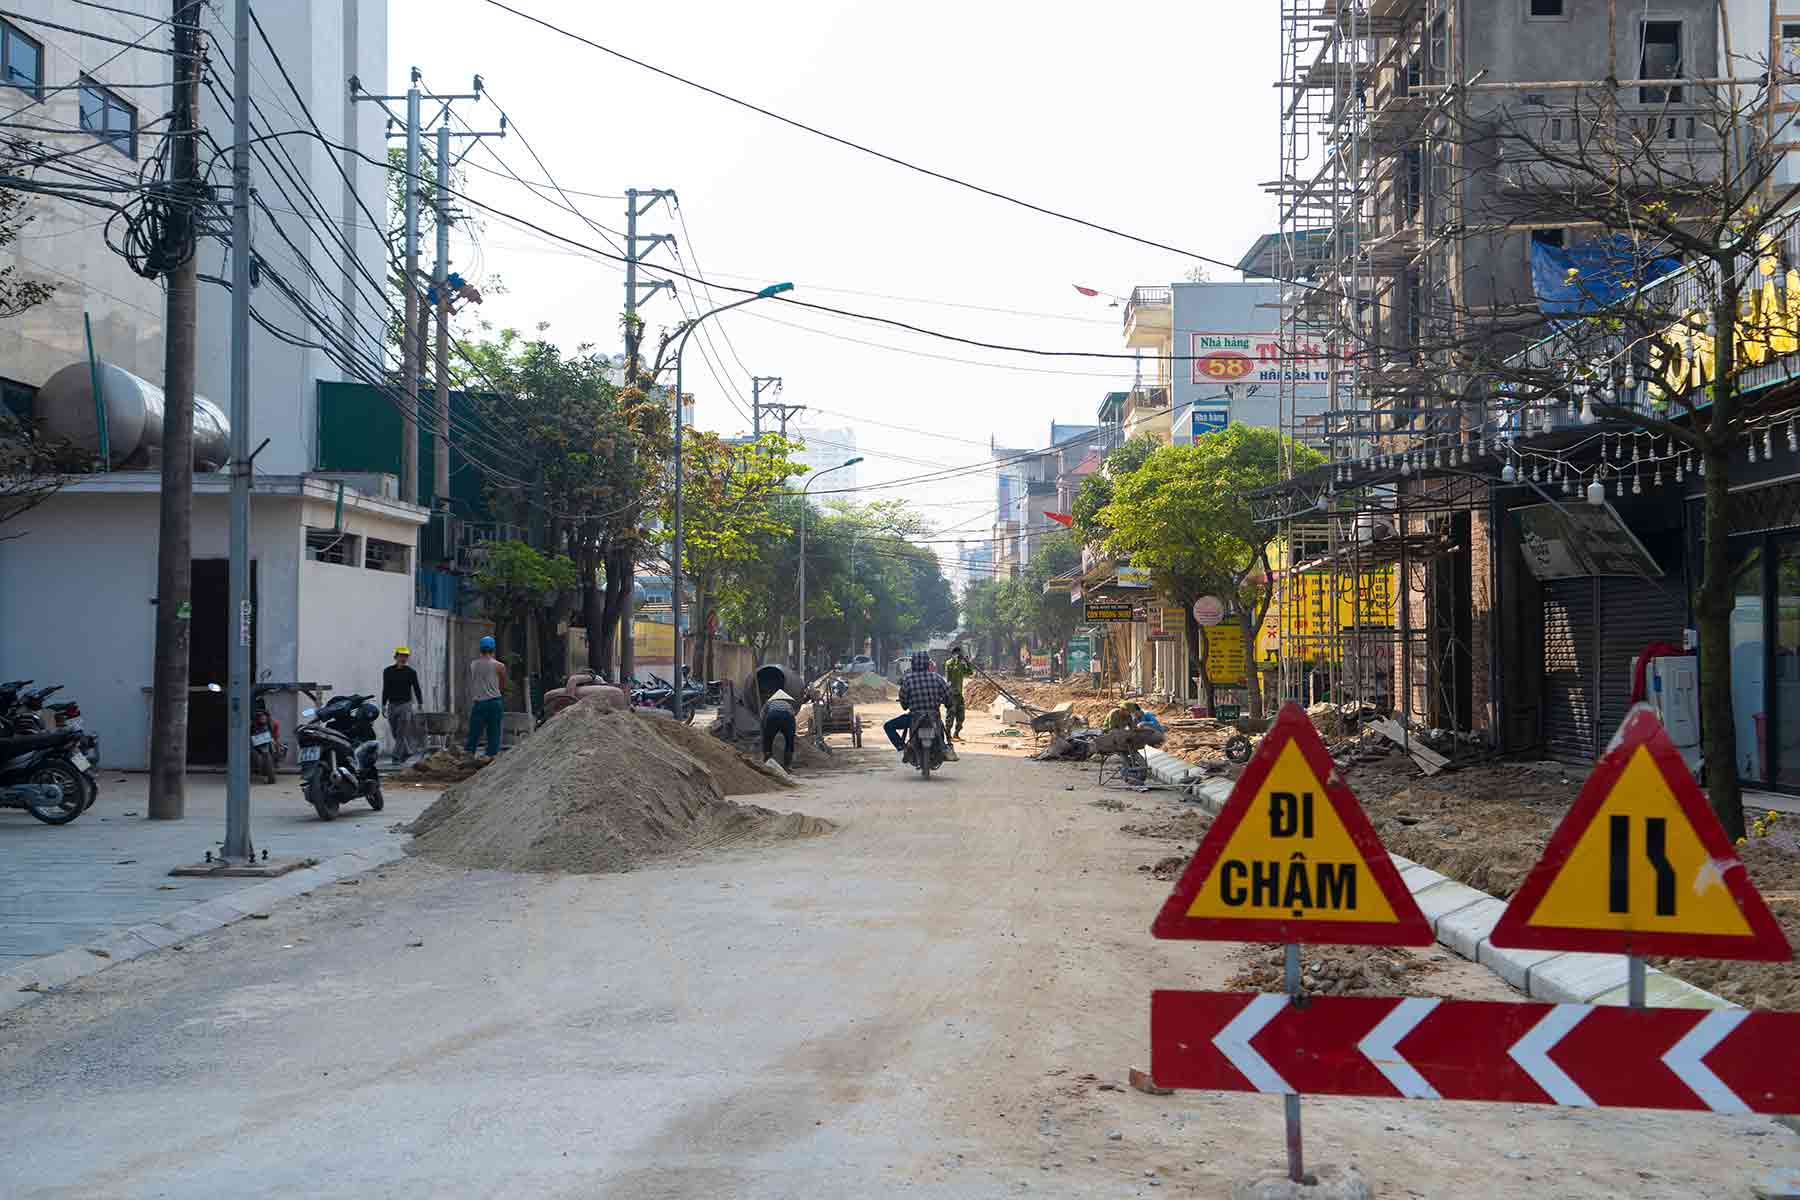 Ngoài đường Bình Minh, thị xã Cửa Lò còn đầu tư chỉnh trang, nâng cấp nhiều tuyến đường nội thị khác như: đường Dương Thanh, đường Đinh Hồng Phiên, đường 12A - Tây Sơn, đường Trịnh Công Sơn